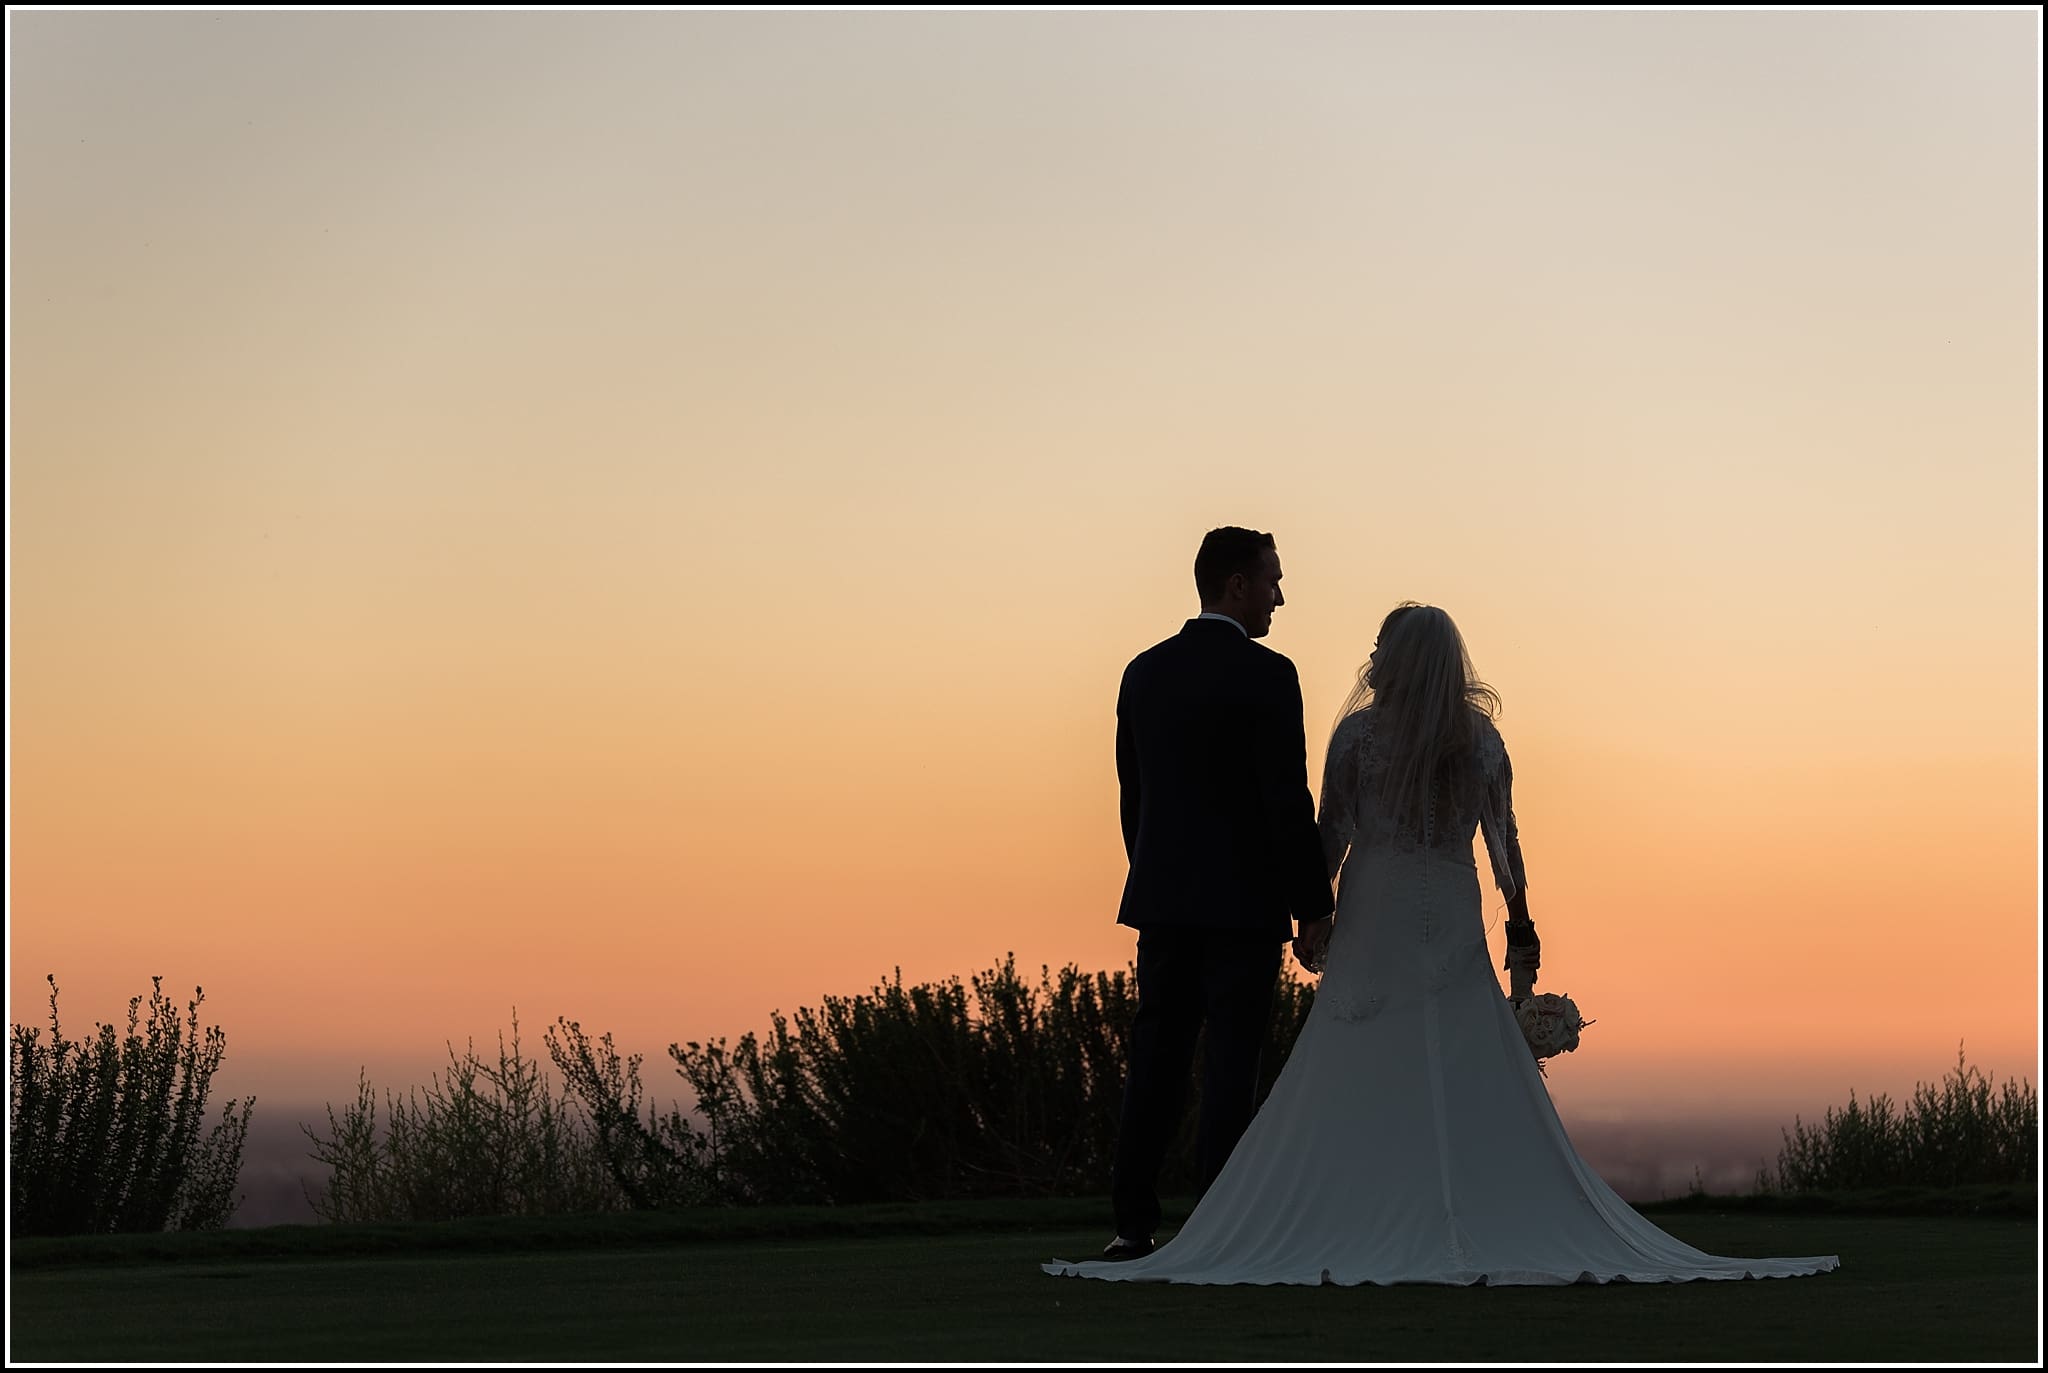  favorite wedding images 2016, wedding photos from 2016, our favorite wedding photos, bride and groom at sunset, sunset silhouette wedding photos, southern california wedding sunset photo